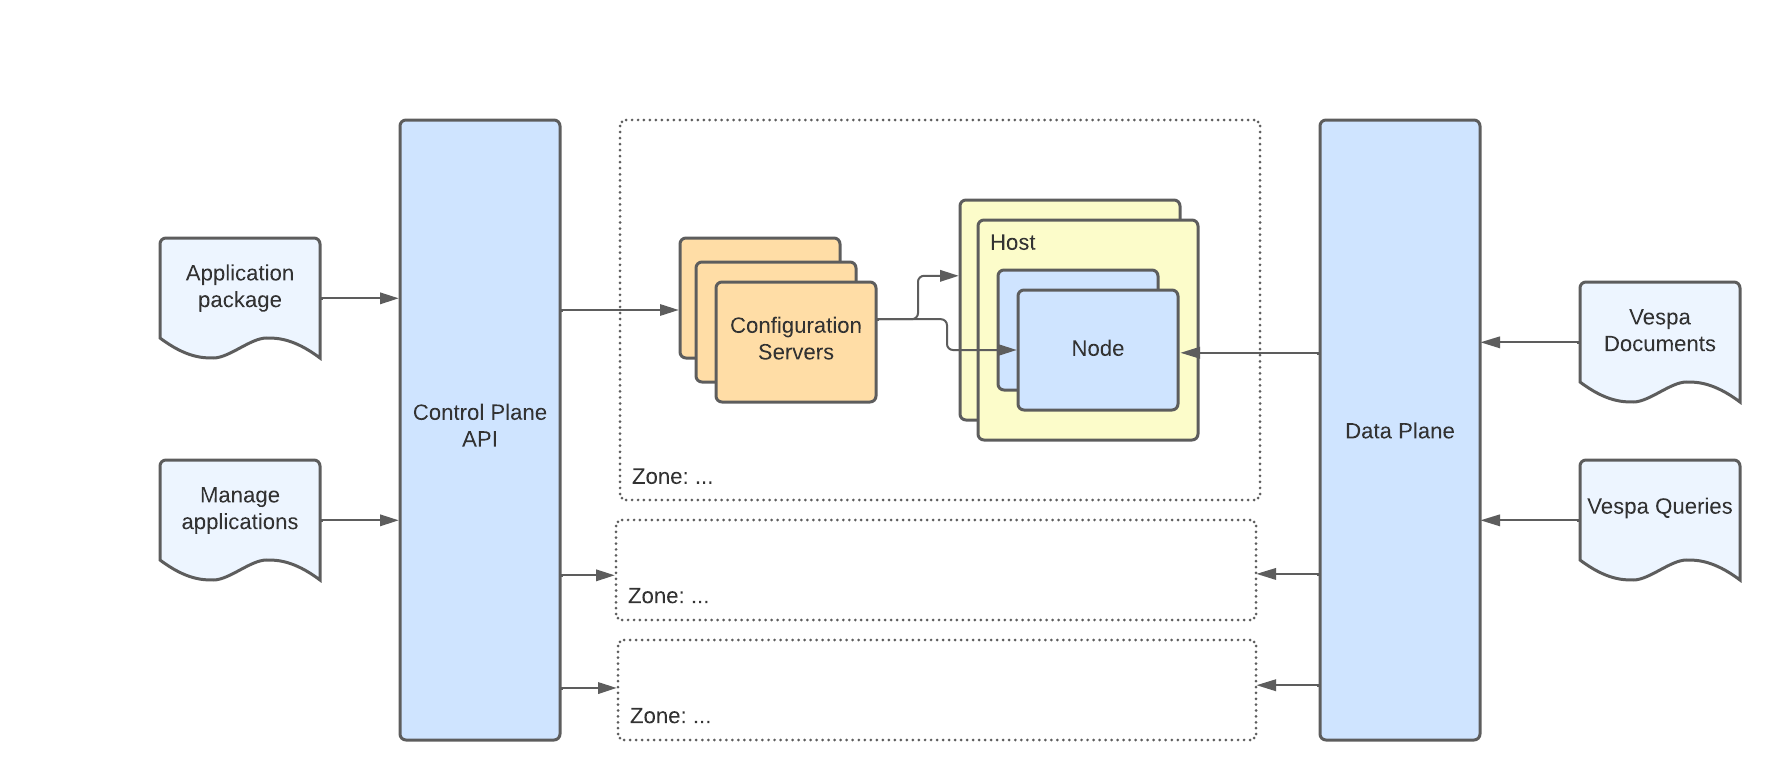 Vespa Cloud overall architecture diagram